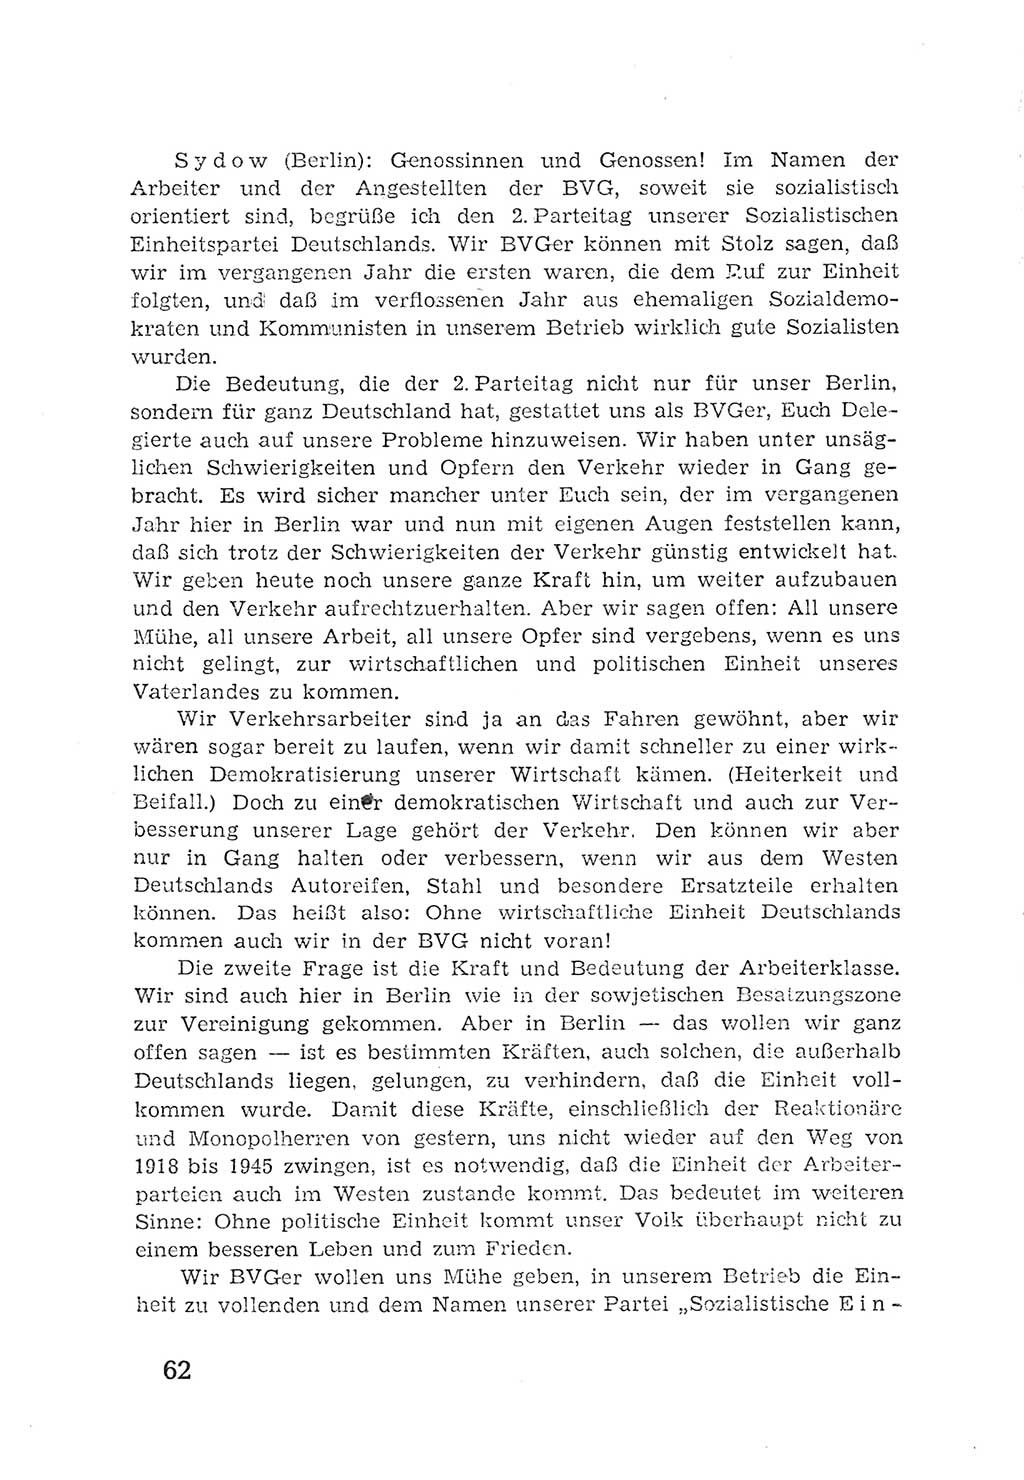 Protokoll der Verhandlungen des 2. Parteitages der Sozialistischen Einheitspartei Deutschlands (SED) [Sowjetische Besatzungszone (SBZ) Deutschlands] 1947, Seite 62 (Prot. Verh. 2. PT SED SBZ Dtl. 1947, S. 62)